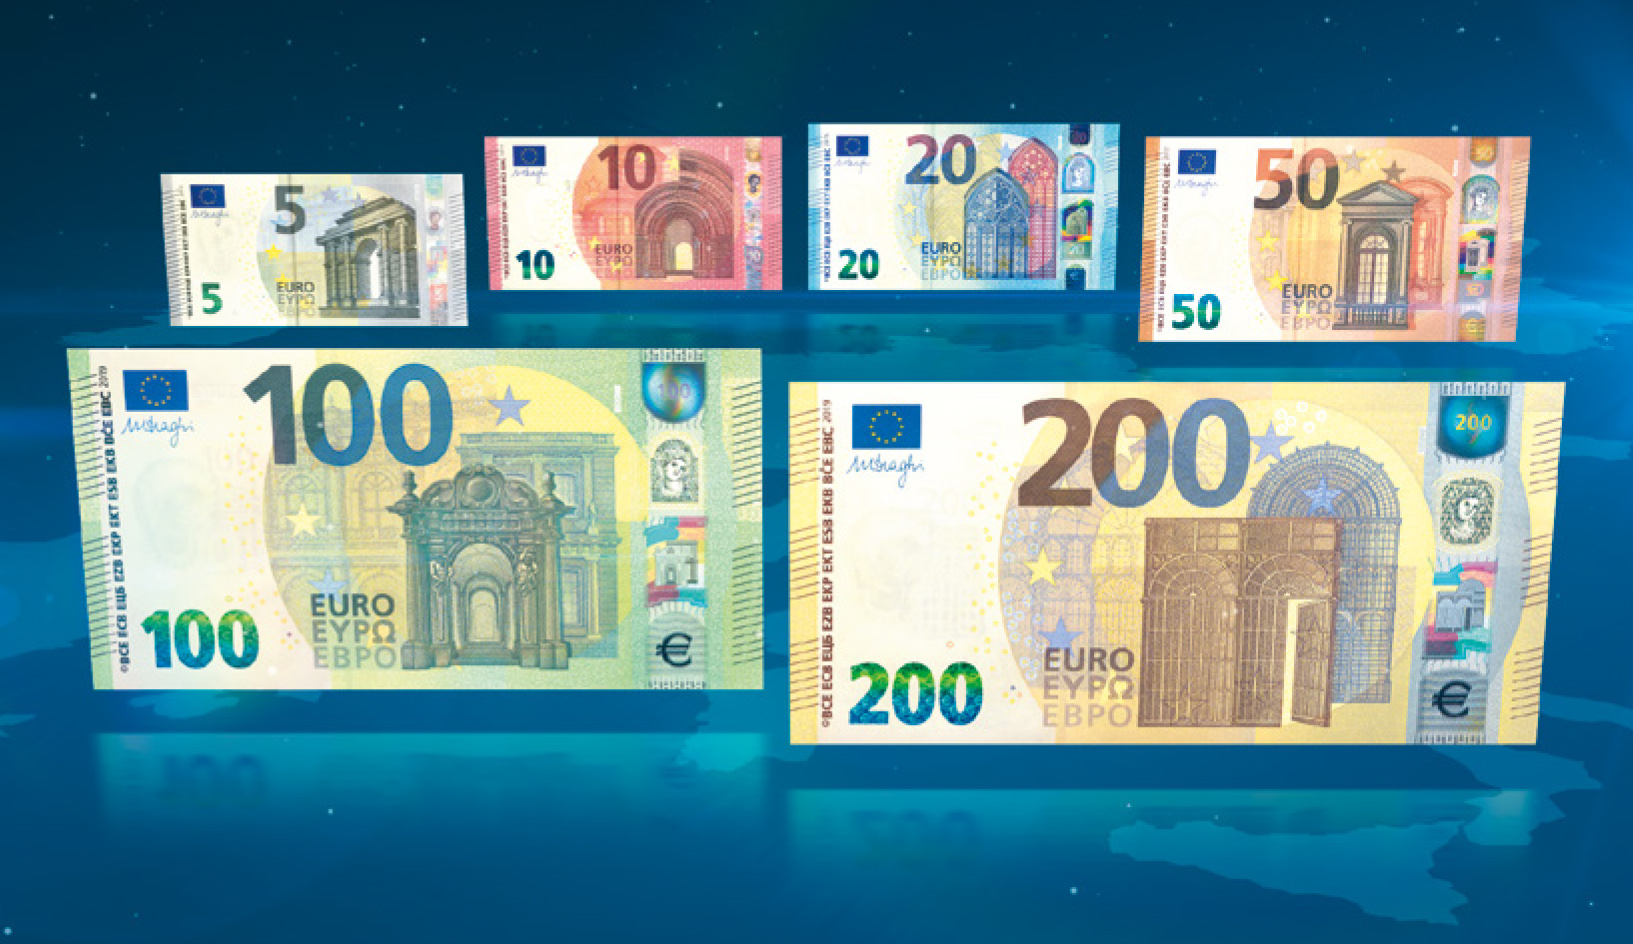 Κρήτη: Δεν πλήρωσε τυχαία με χαρτονόμισμα των 200 ευρώ – Την πάτησε ο ταμίας του καταστήματος!